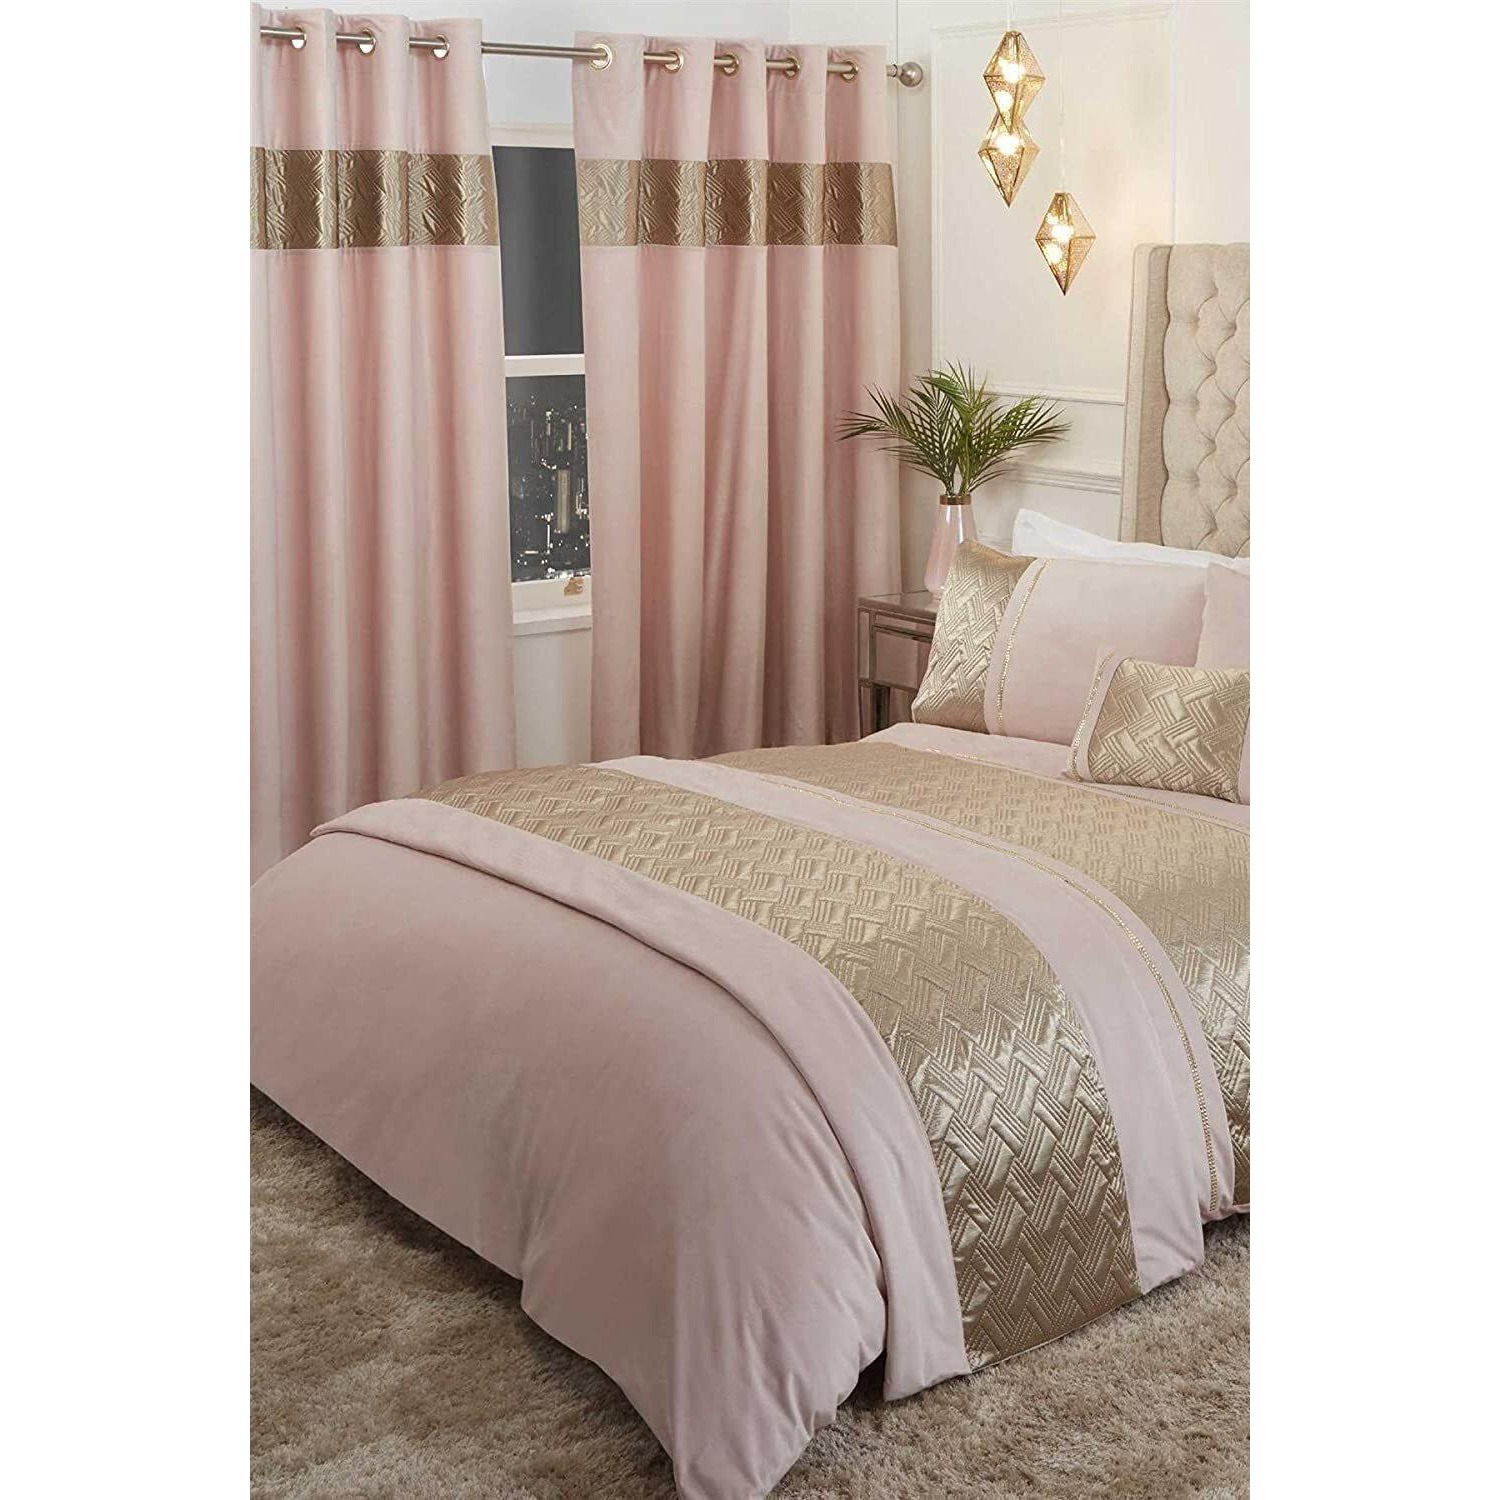 Capri Embellished Bed Runner - image 1